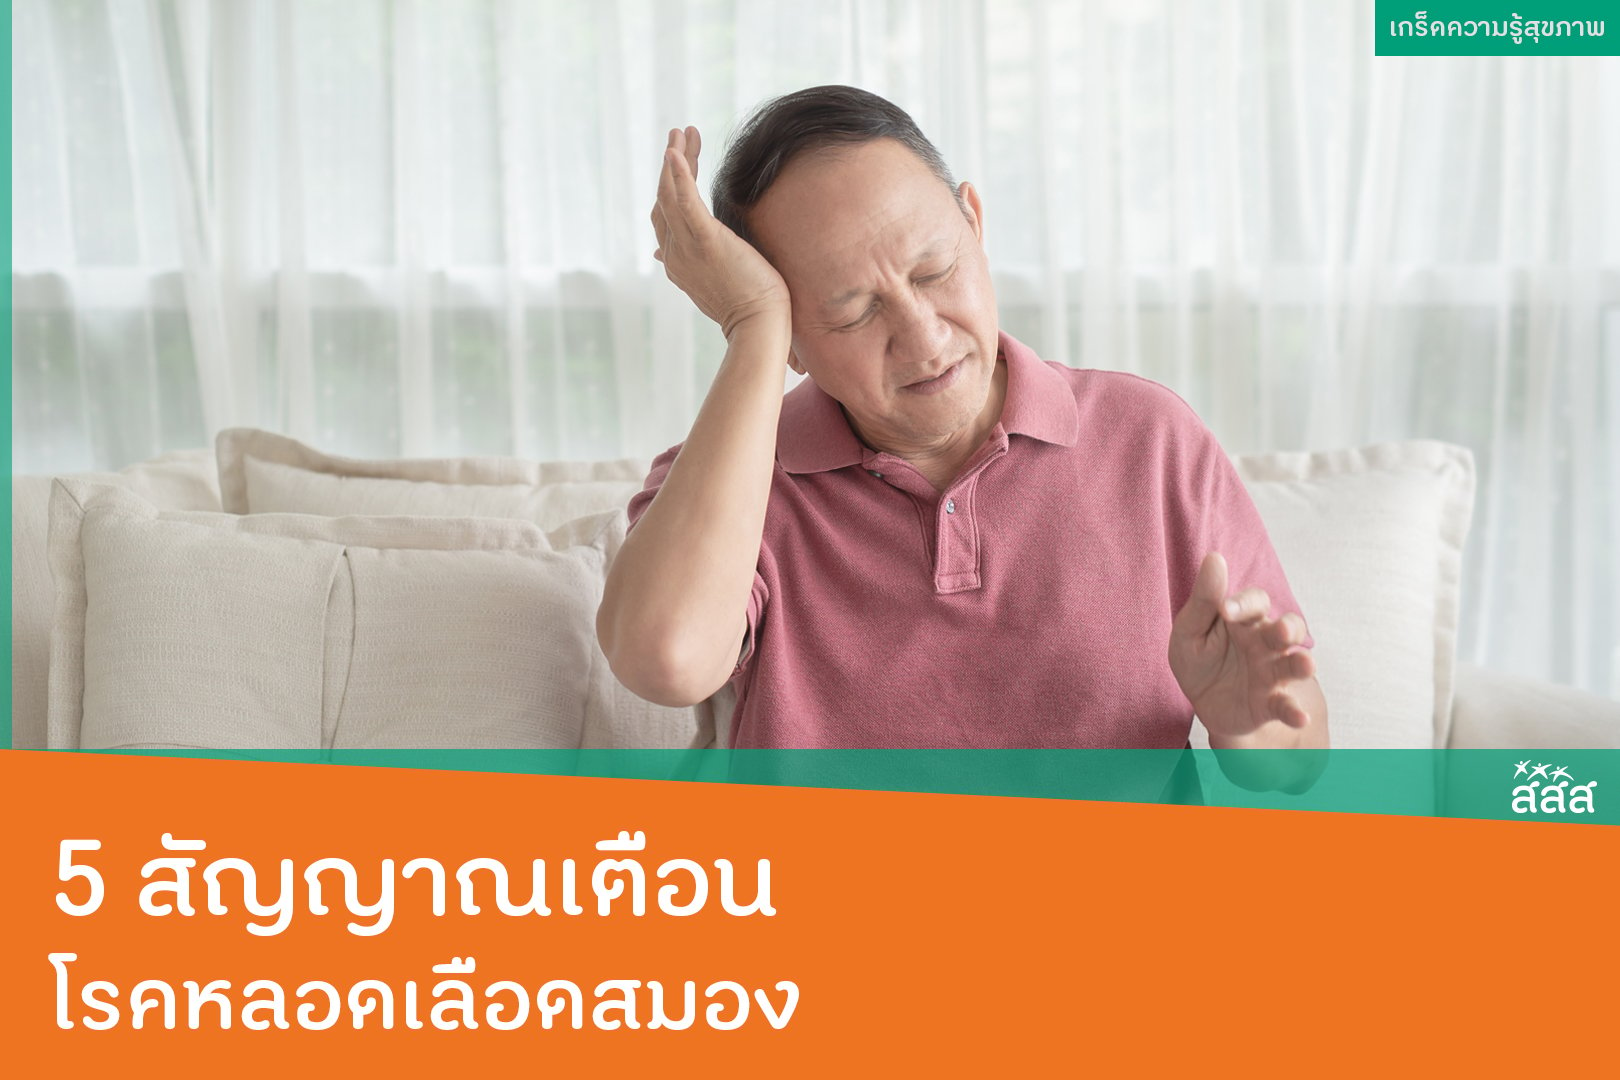 5 สัญญาณเตือนโรคหลอดเลือดสมอง thaihealth